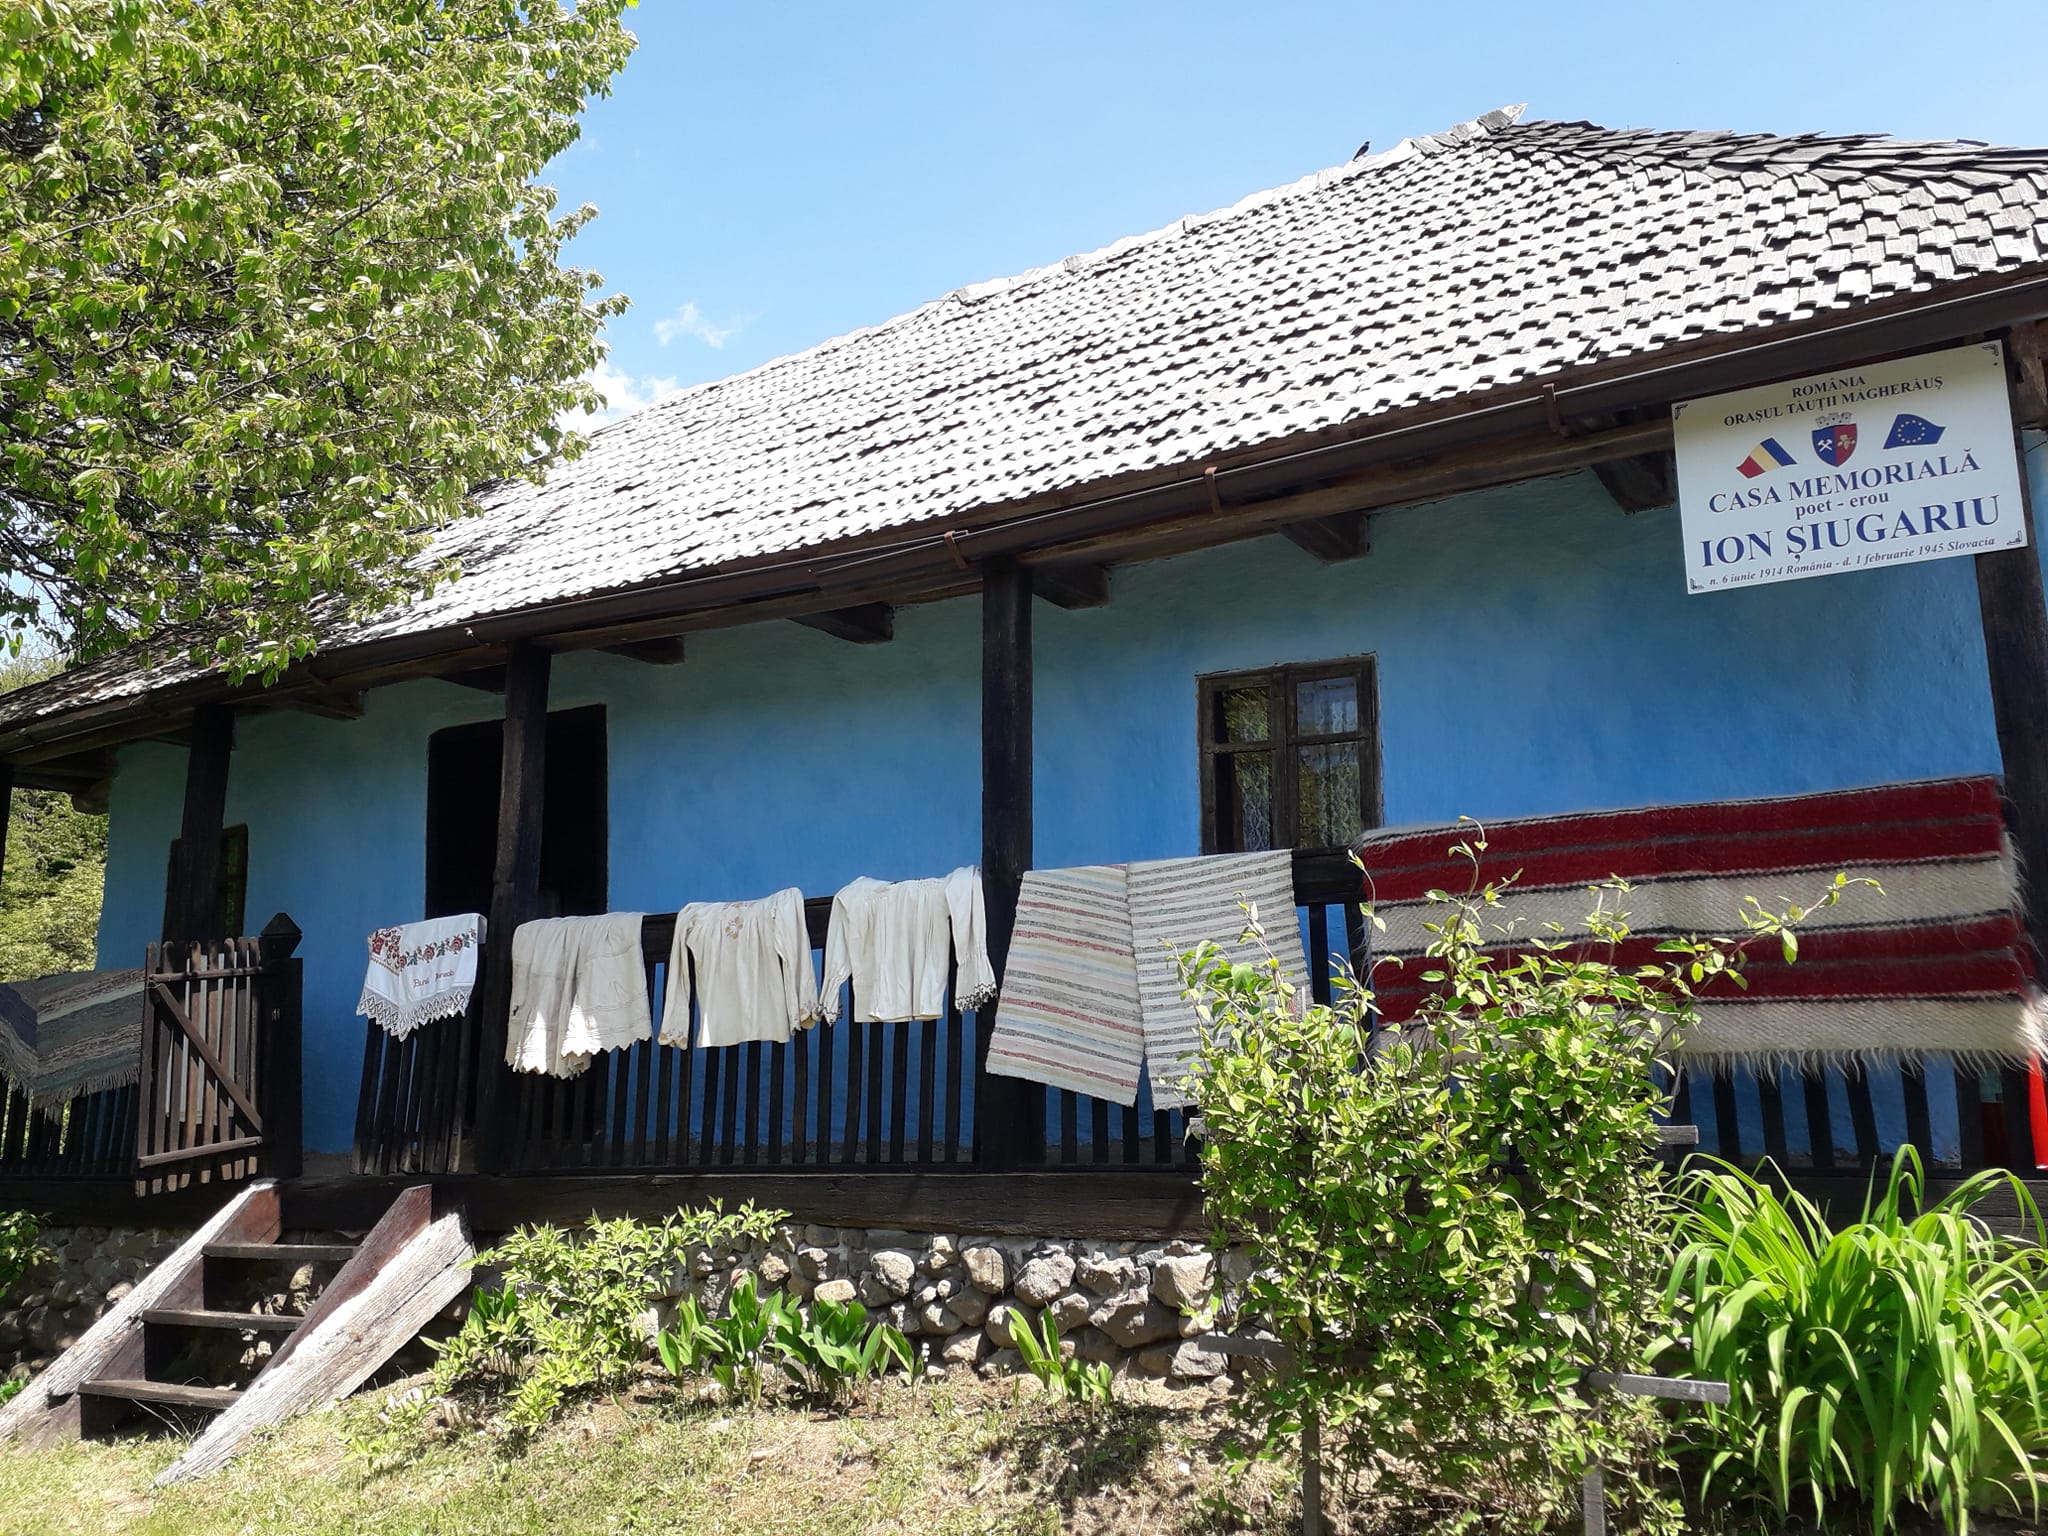 Casa Memorială a poetului Ion Șiugariu, Băița, Maramureș